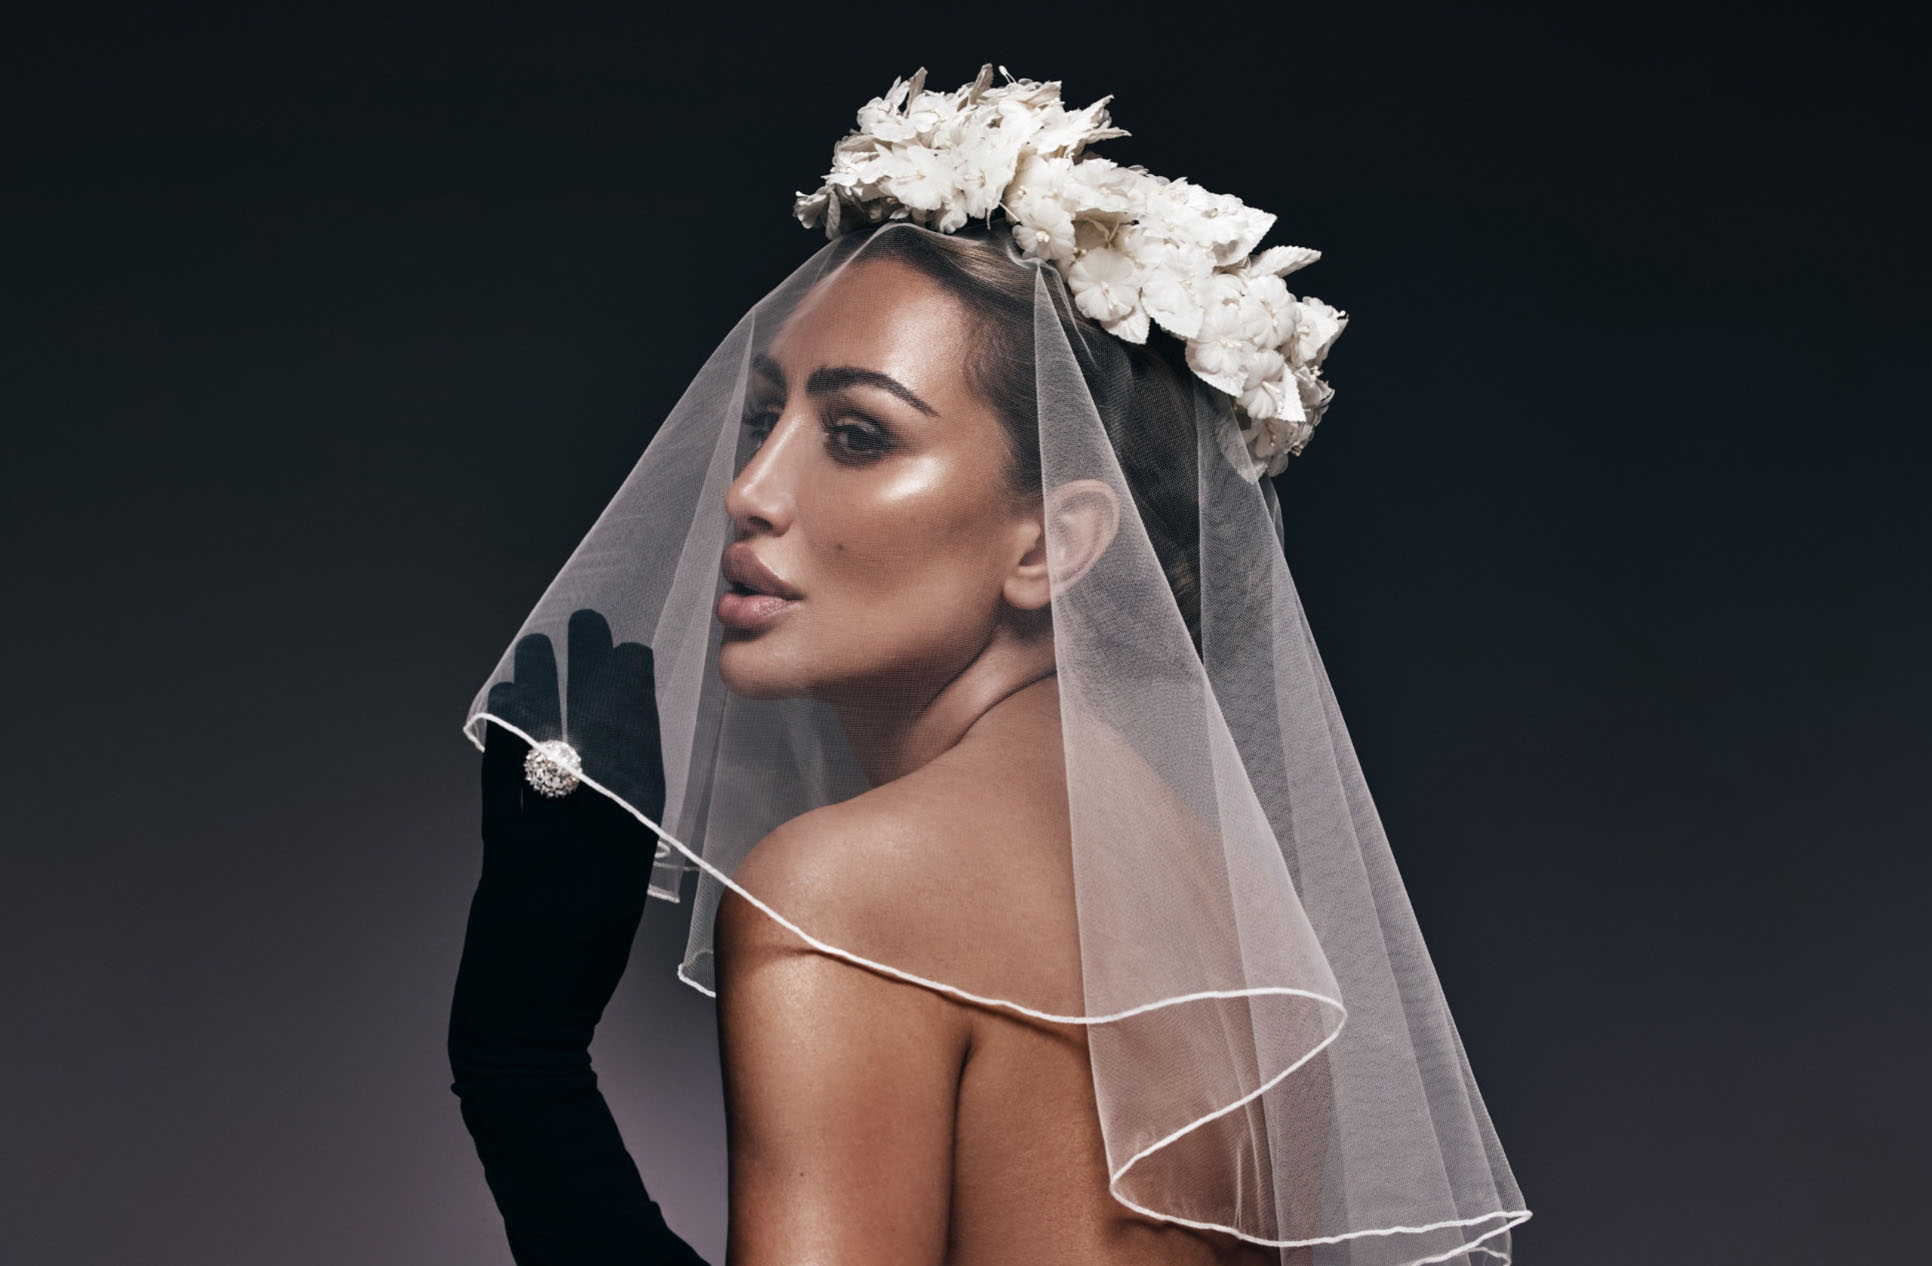 خاص- أغنية “عروس” لـ مايا دياب مكتملة العناصر، تحجز مكانها من اليوم الأول في حفلات الزفاف